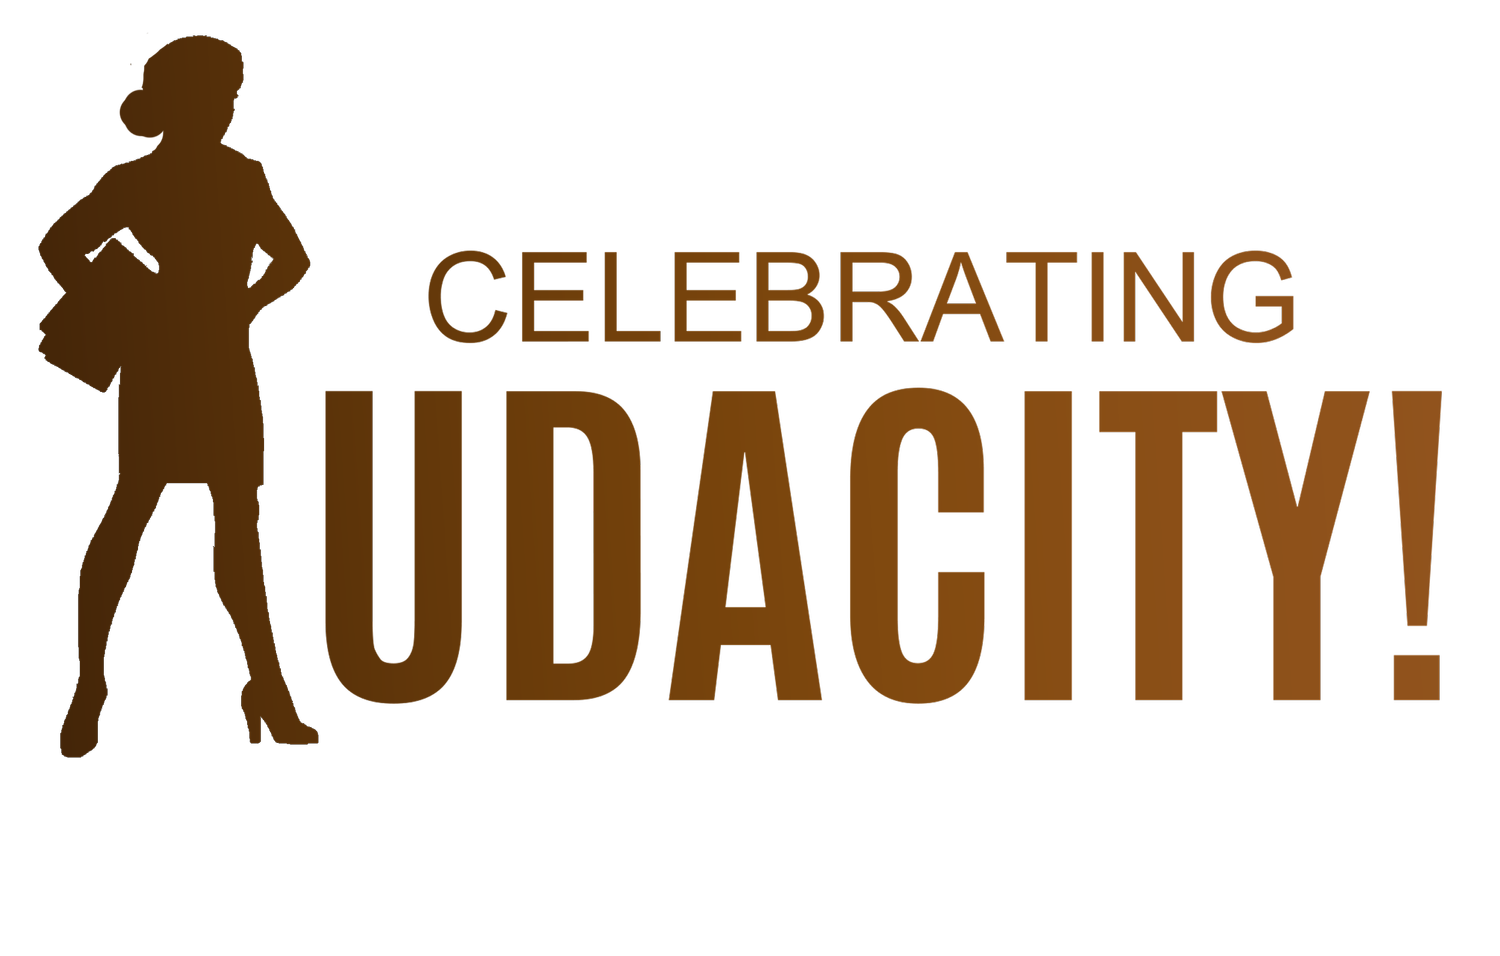 Celebrating Audacity